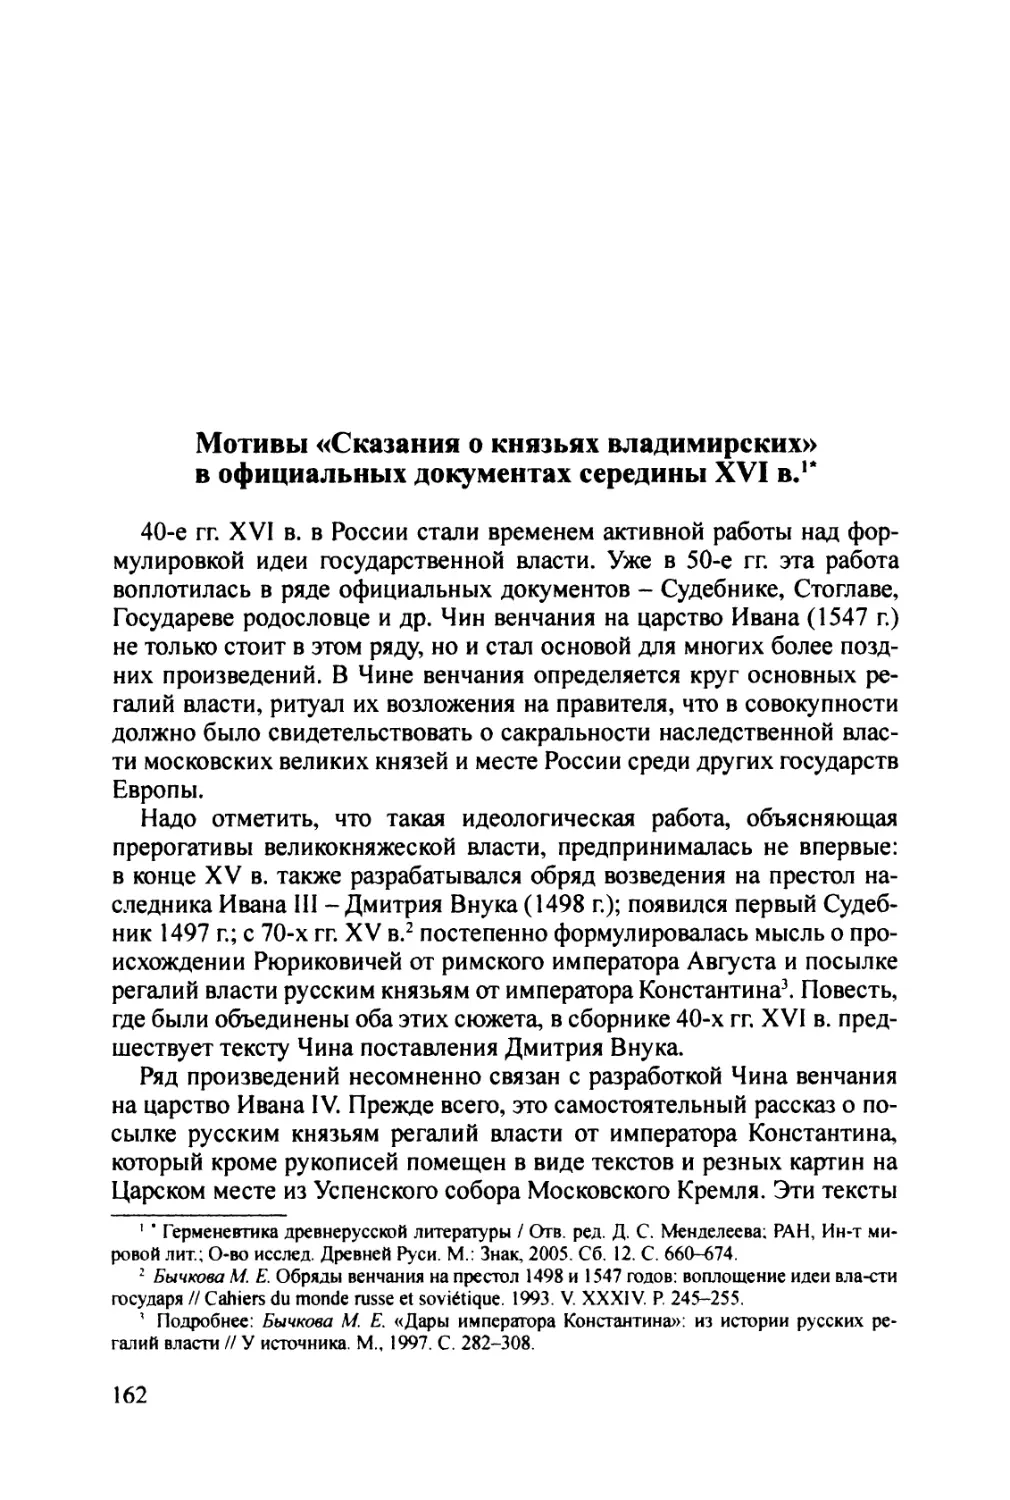 Мотивы  «Сказания  о  князьях  владимирских» в  официальных  документах  середины  XVI  в.»